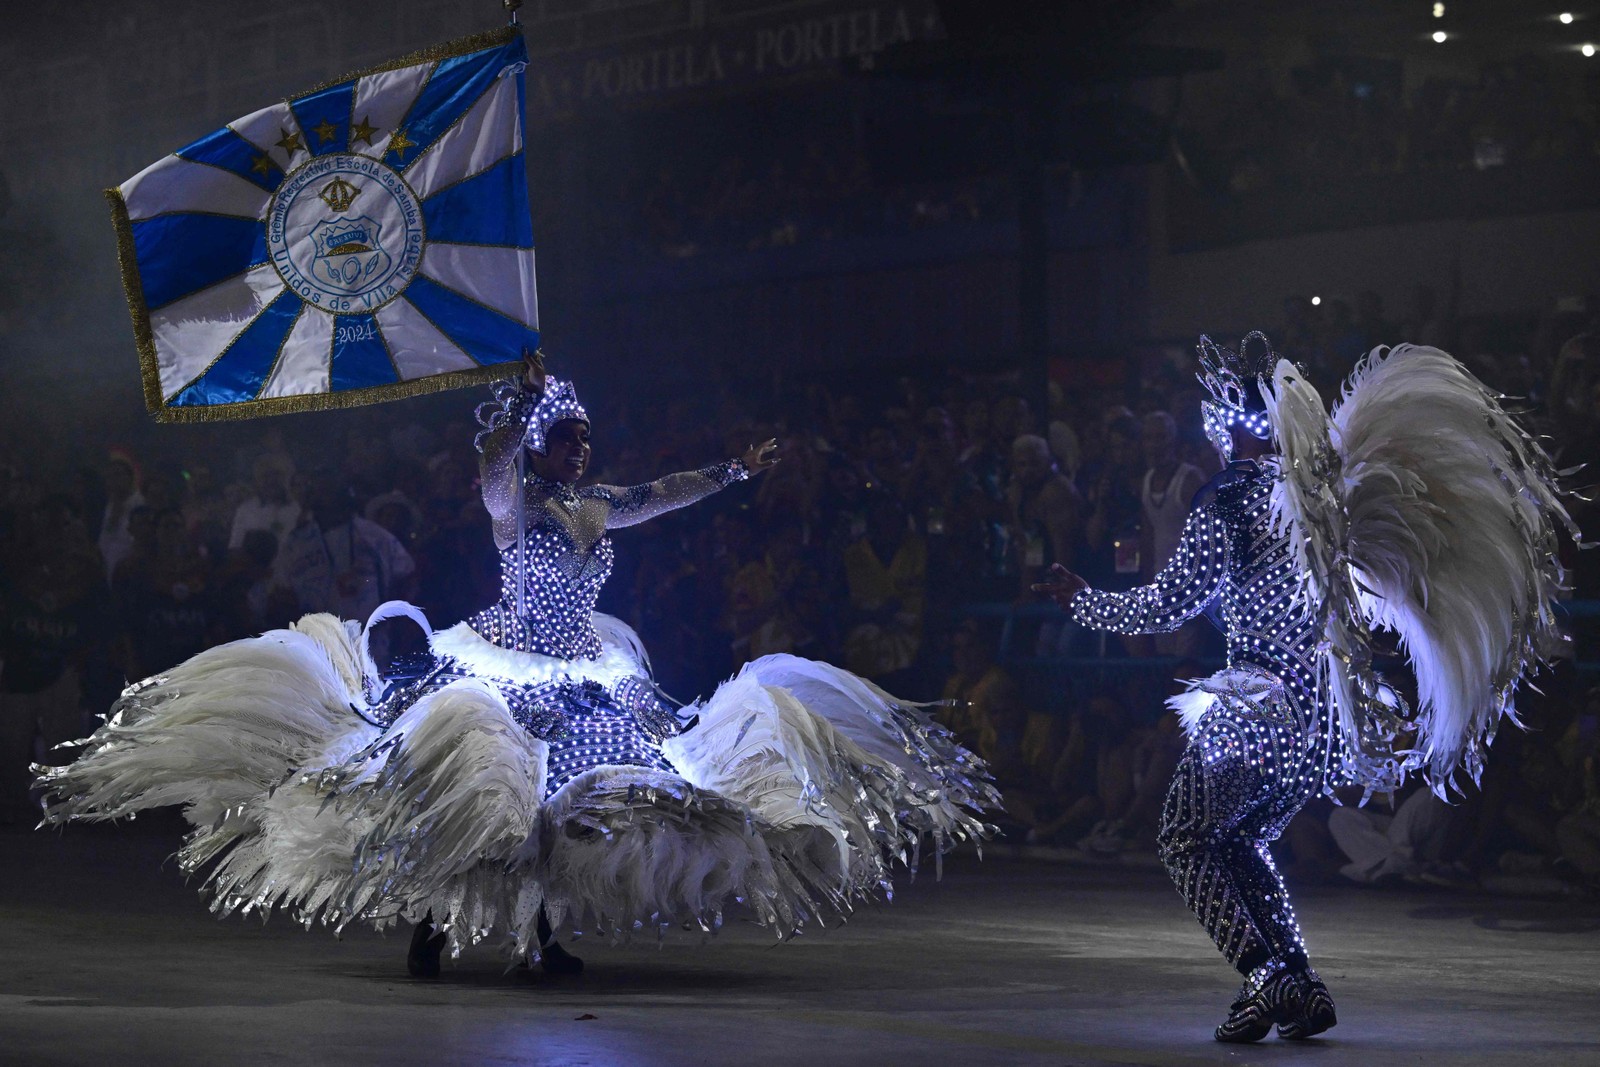 As luzes nas fantasias do casal de mestre-sala e porta-bandeira da Vila Isabel — Foto: Pablo Porciuncula/AFP